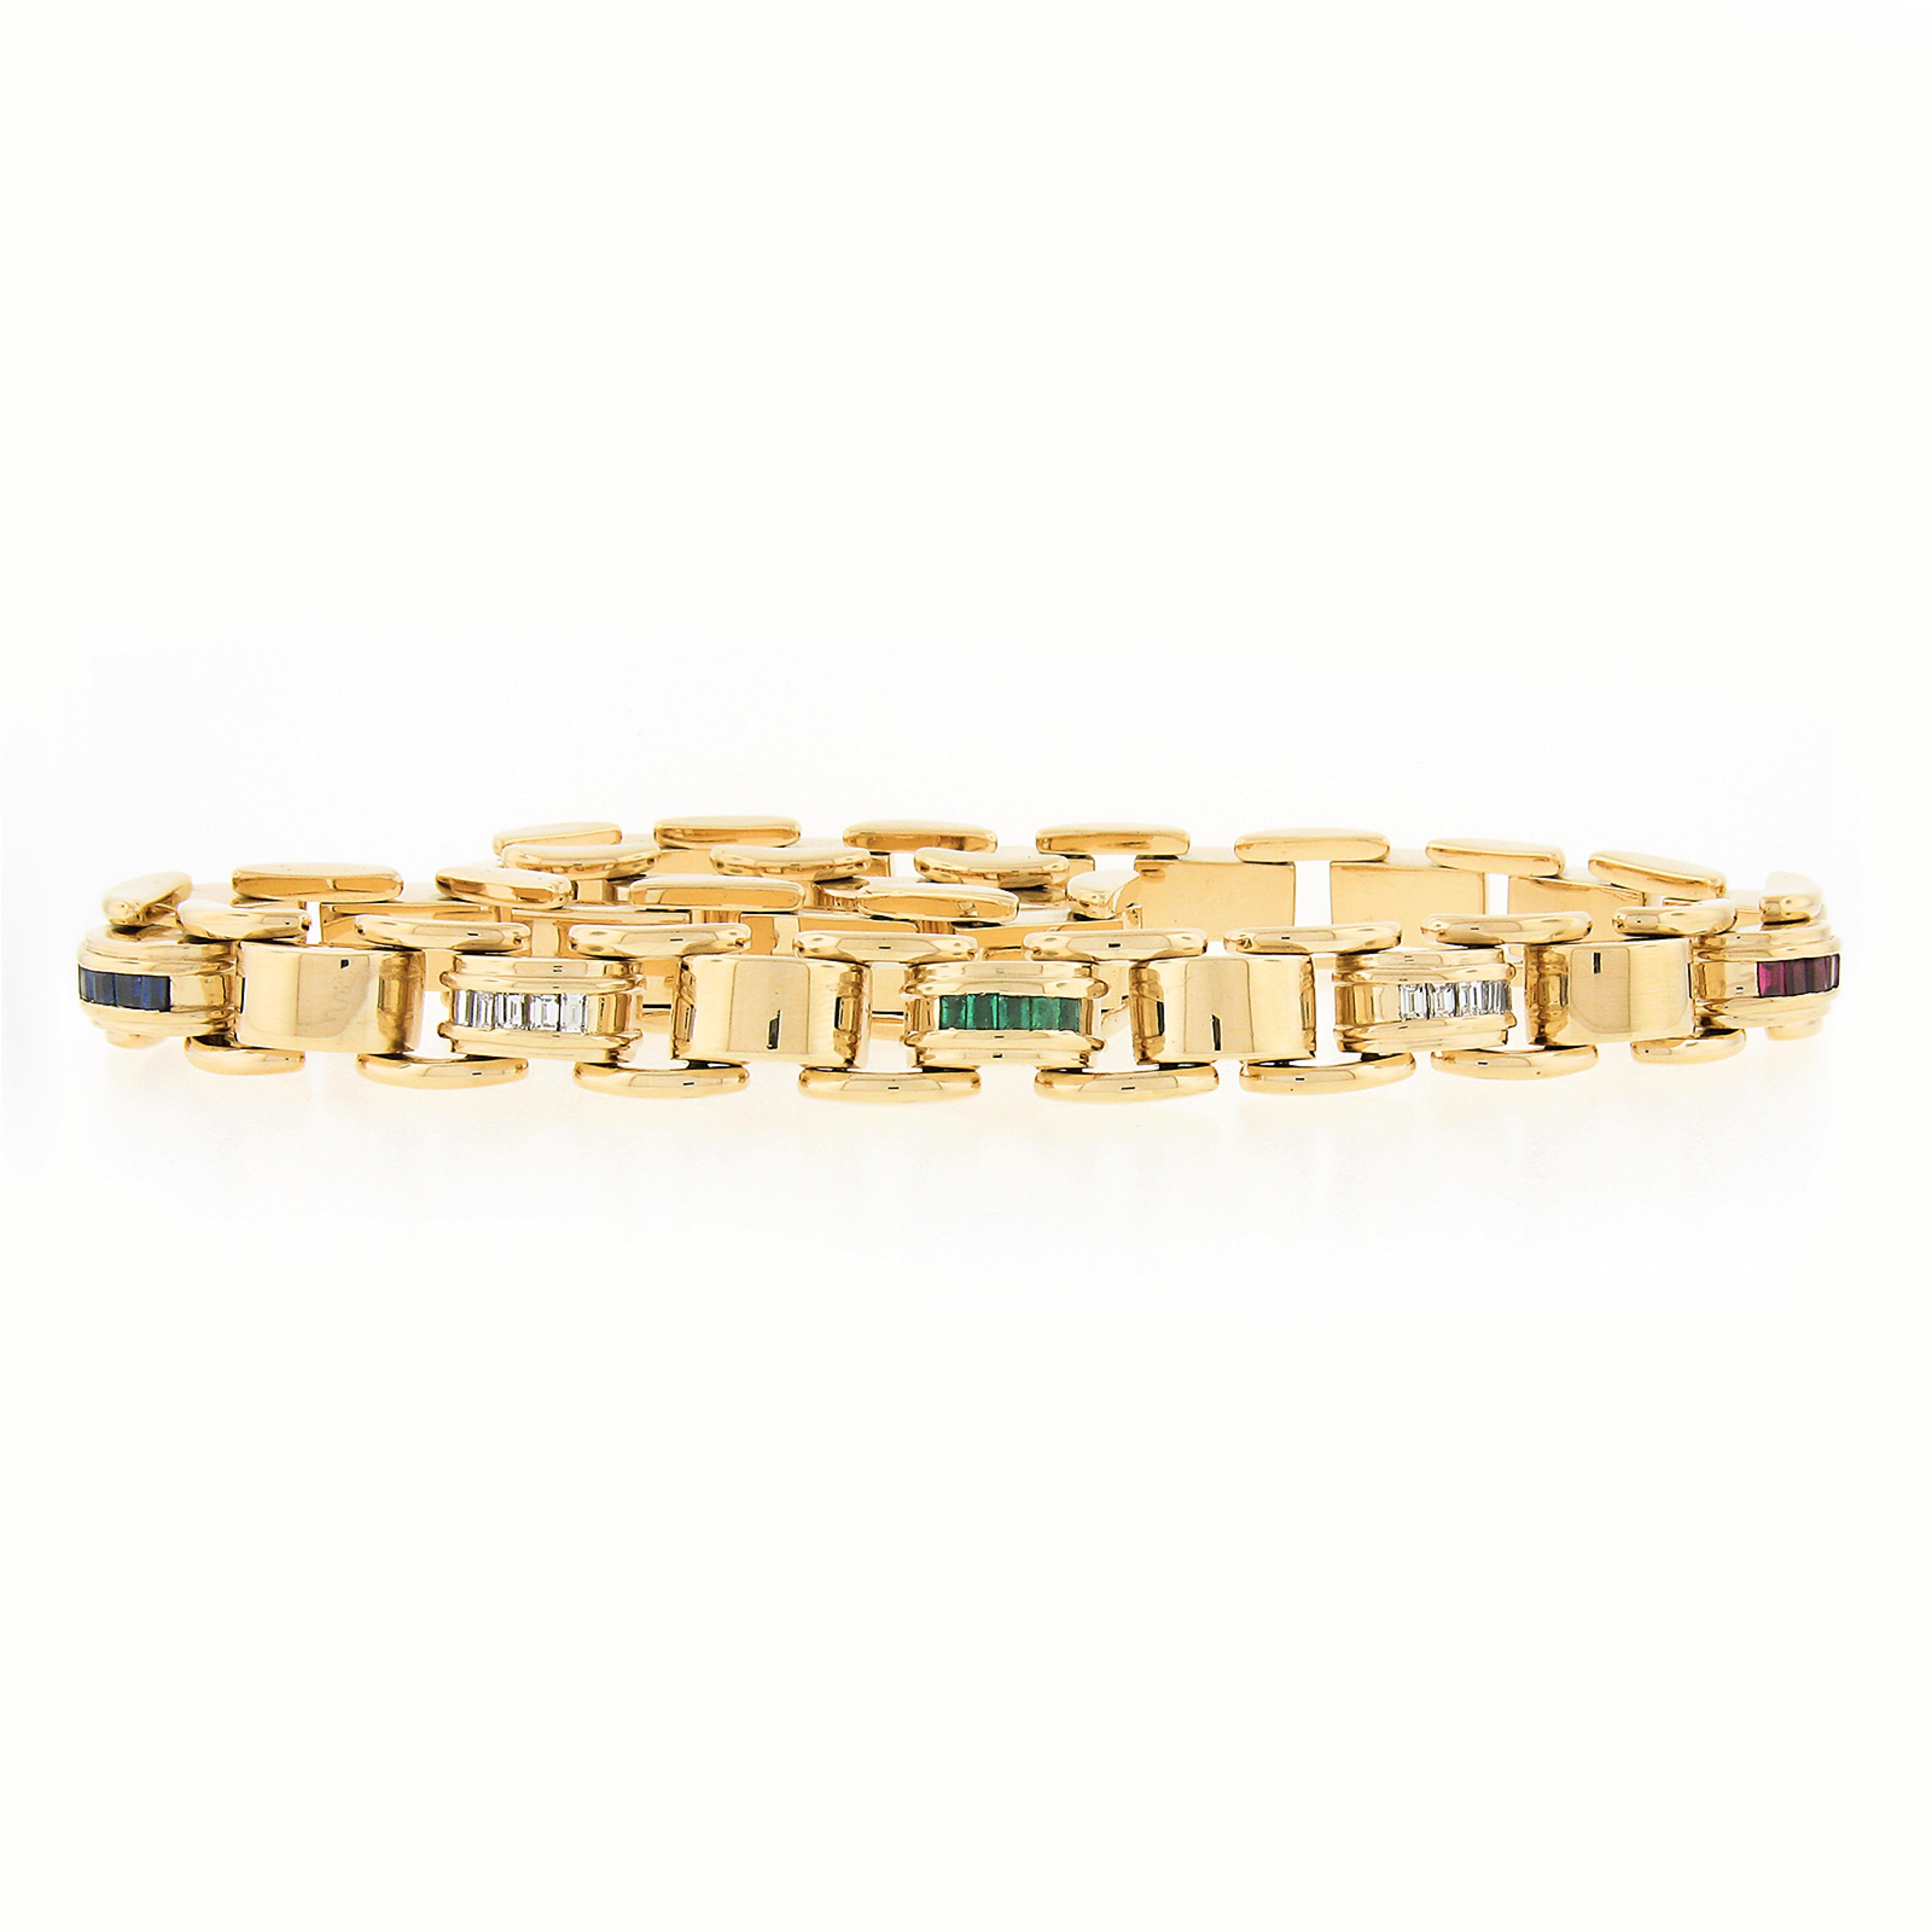 Ce magnifique ensemble collier et bracelet vintage de Tiffany & By est réalisé en or jaune massif 18 carats. Cet ensemble solide et de très bonne facture présente des maillons fantaisie en forme de dôme et une magnifique finition polie pour un